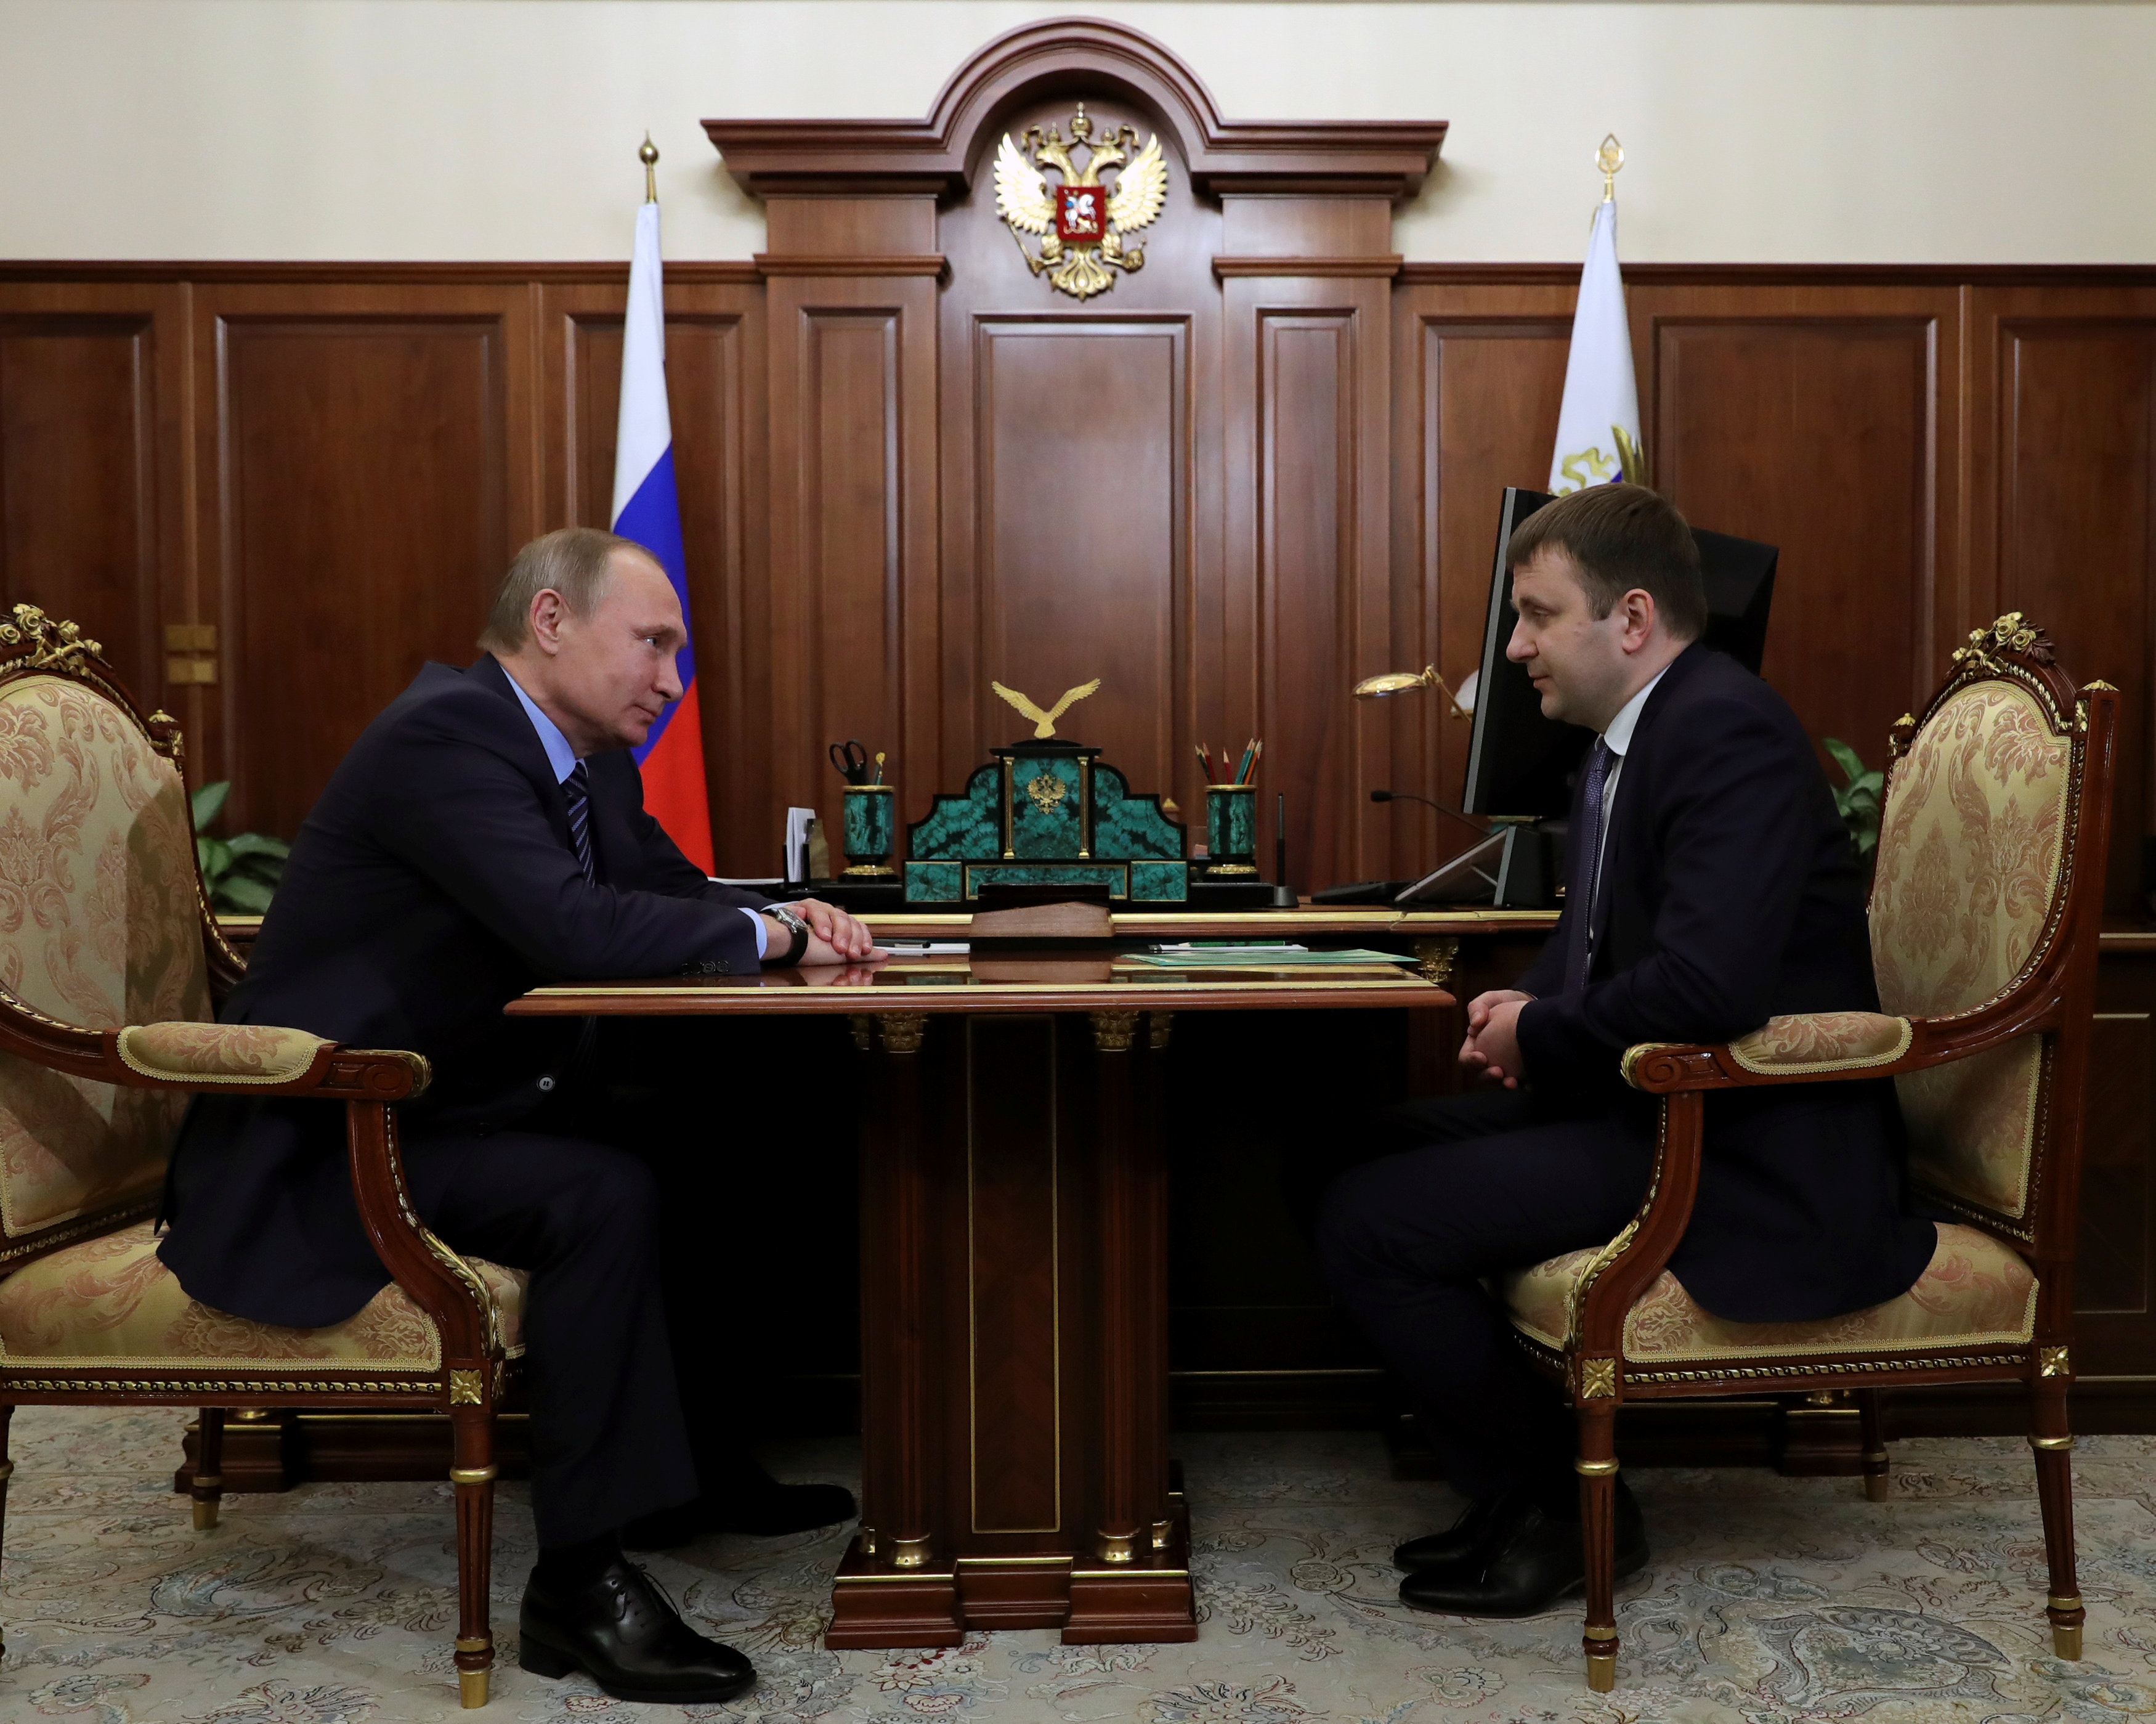 Τον Μαξίμ Ορέσκιν διόρισε υπουργό Οικονομίας ο Πούτιν